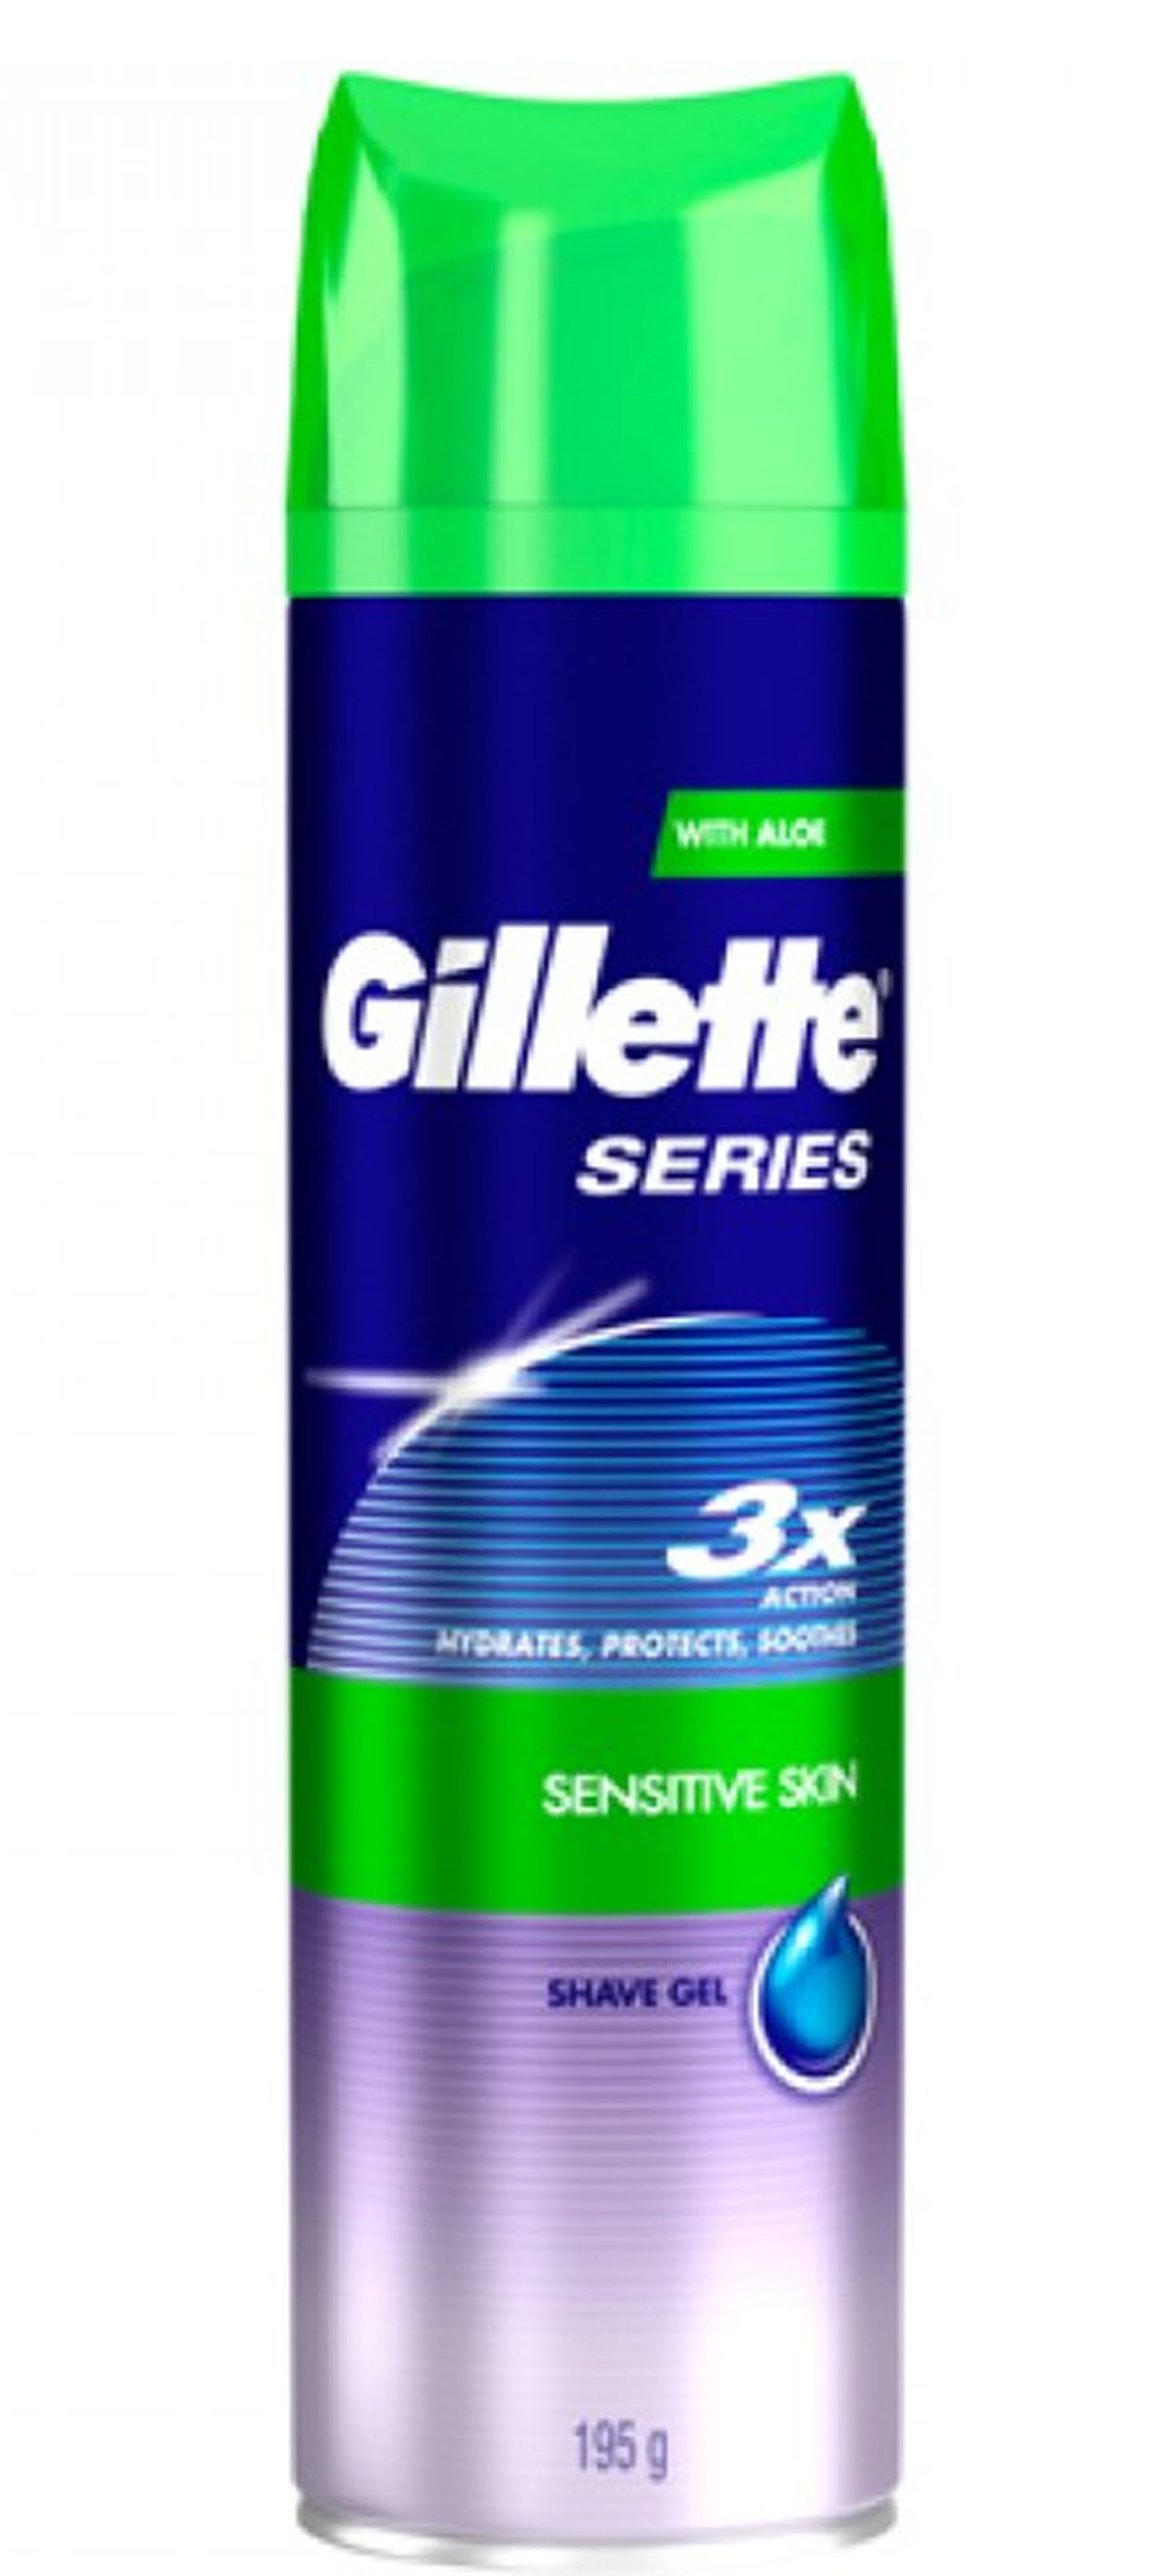 Gillette Shaving Gel Sensitive Skin200ml